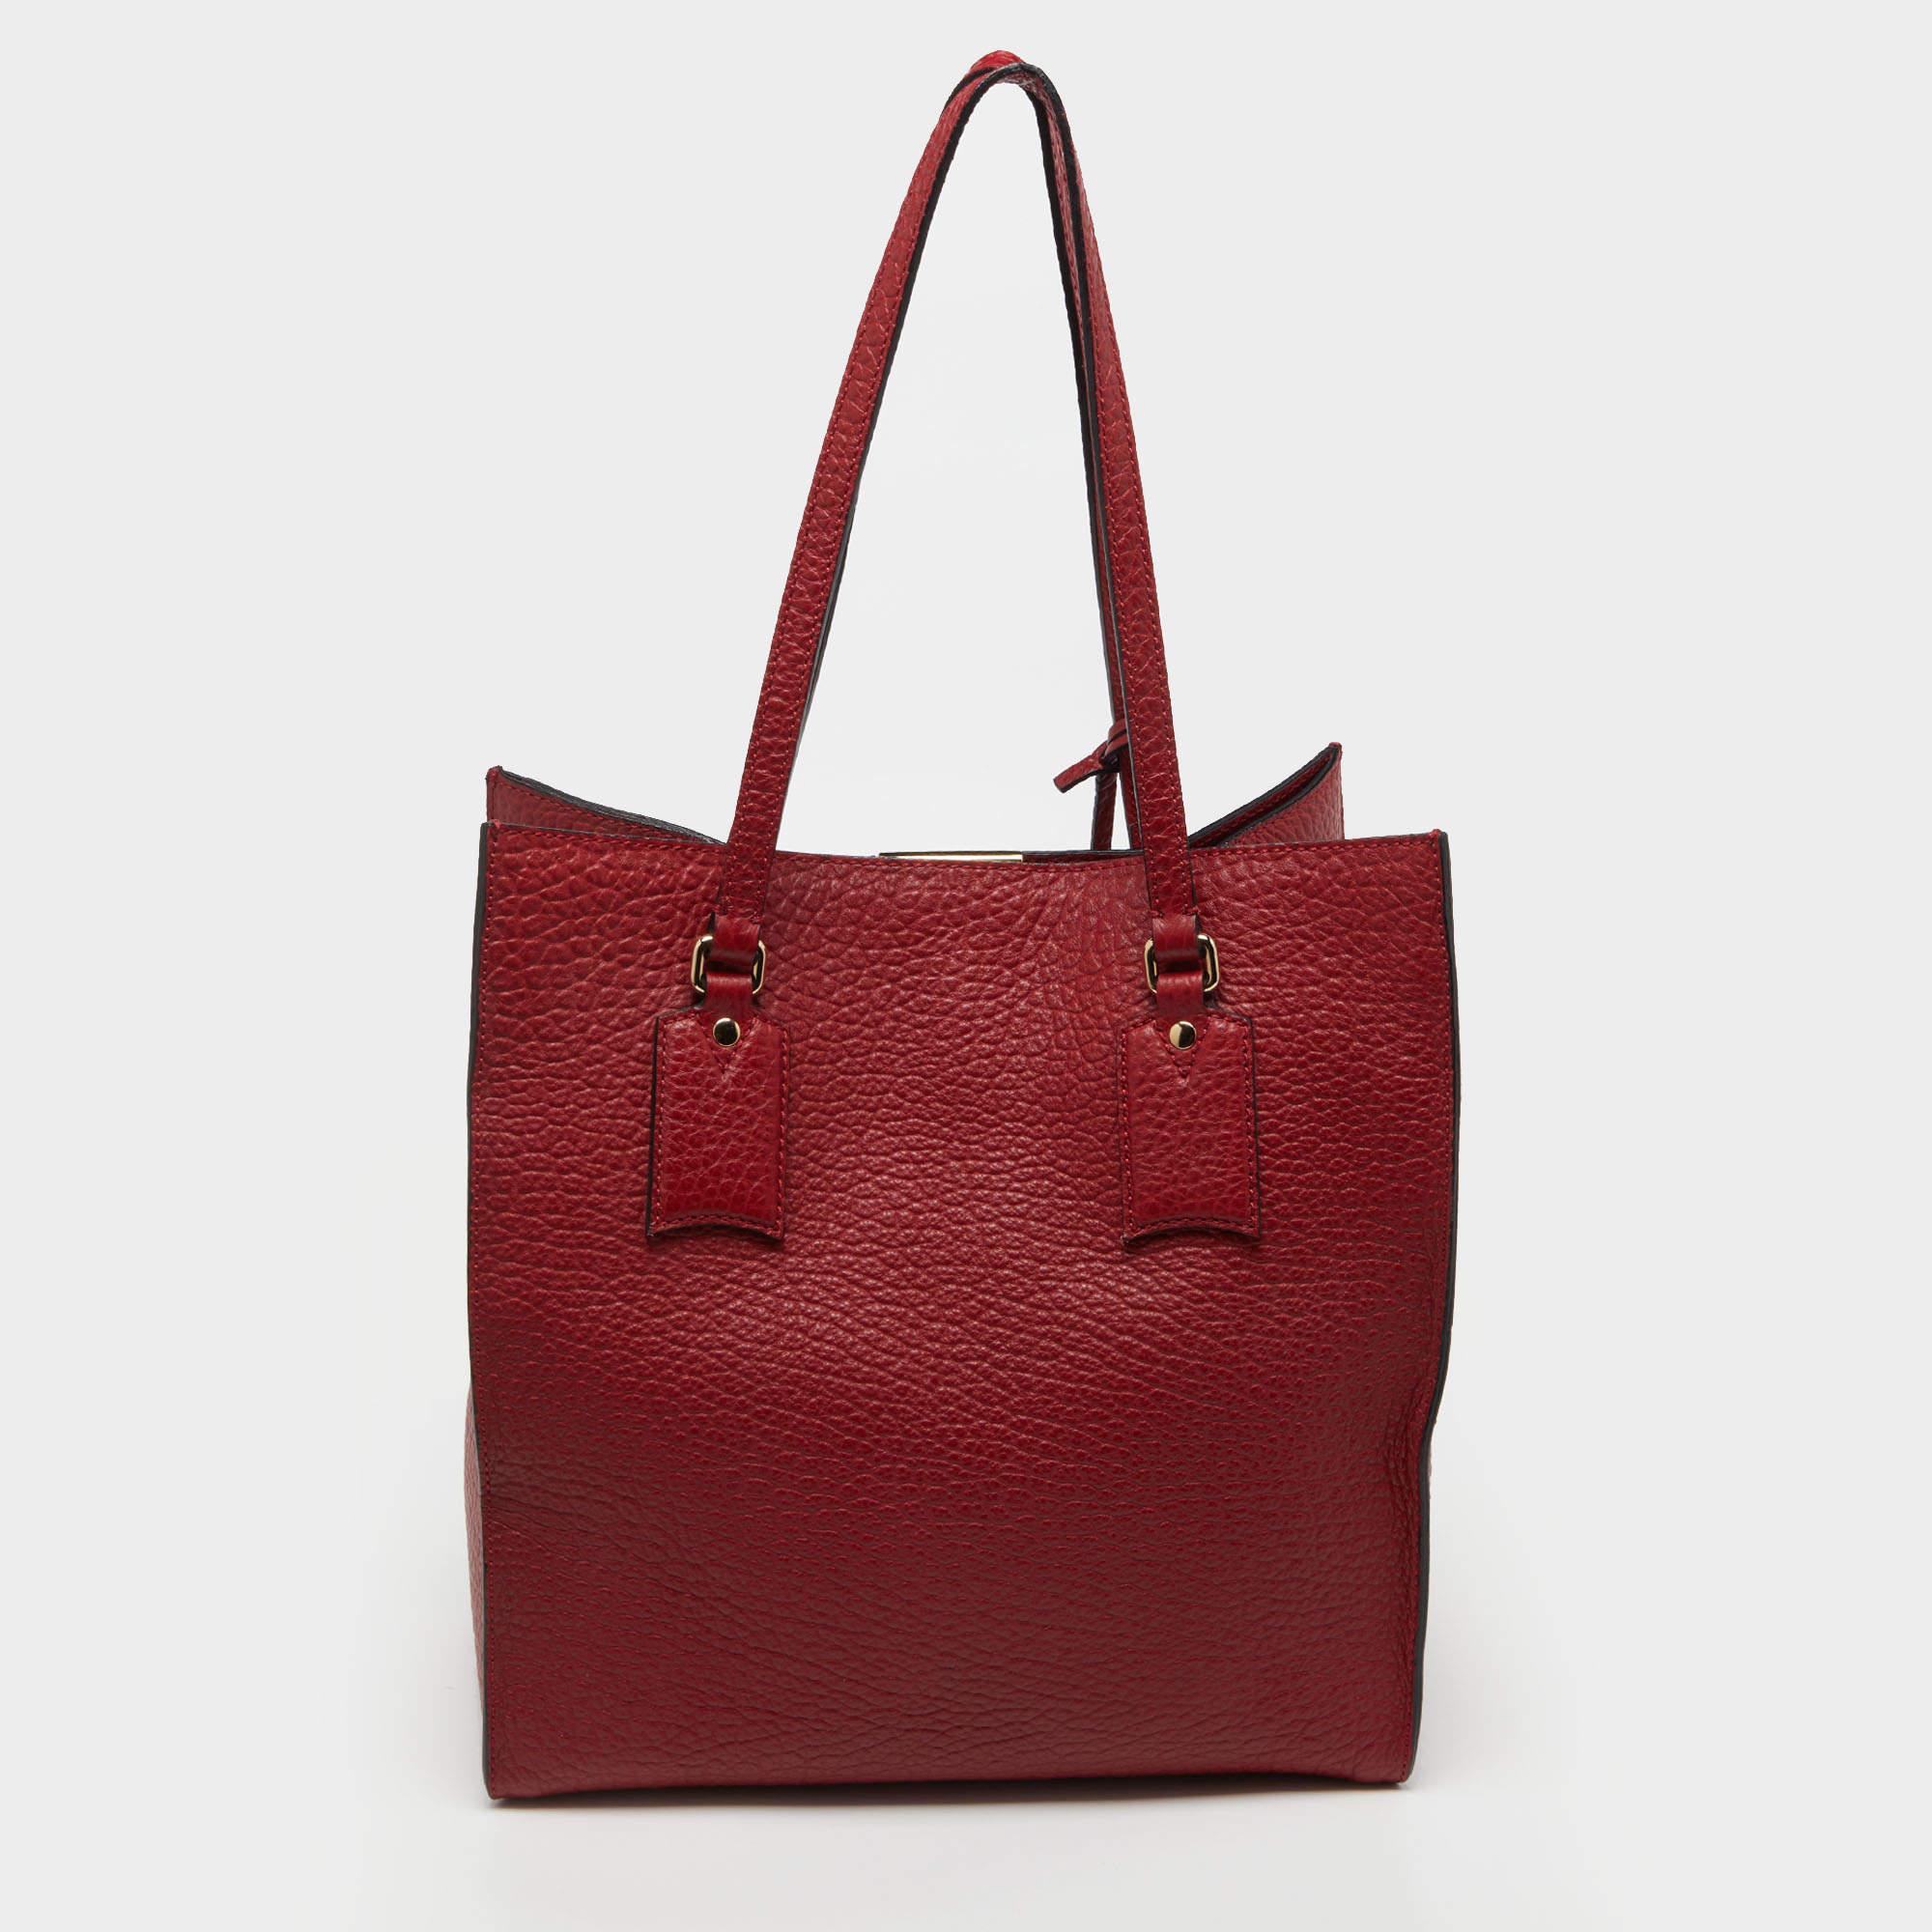 Offrez-vous un luxe intemporel avec ce sac rouge Burberry. Méticuleusement fabriquée à la main, cette pièce emblématique allie patrimoine, élégance et savoir-faire, élevant votre style à un niveau de sophistication inégalé.

